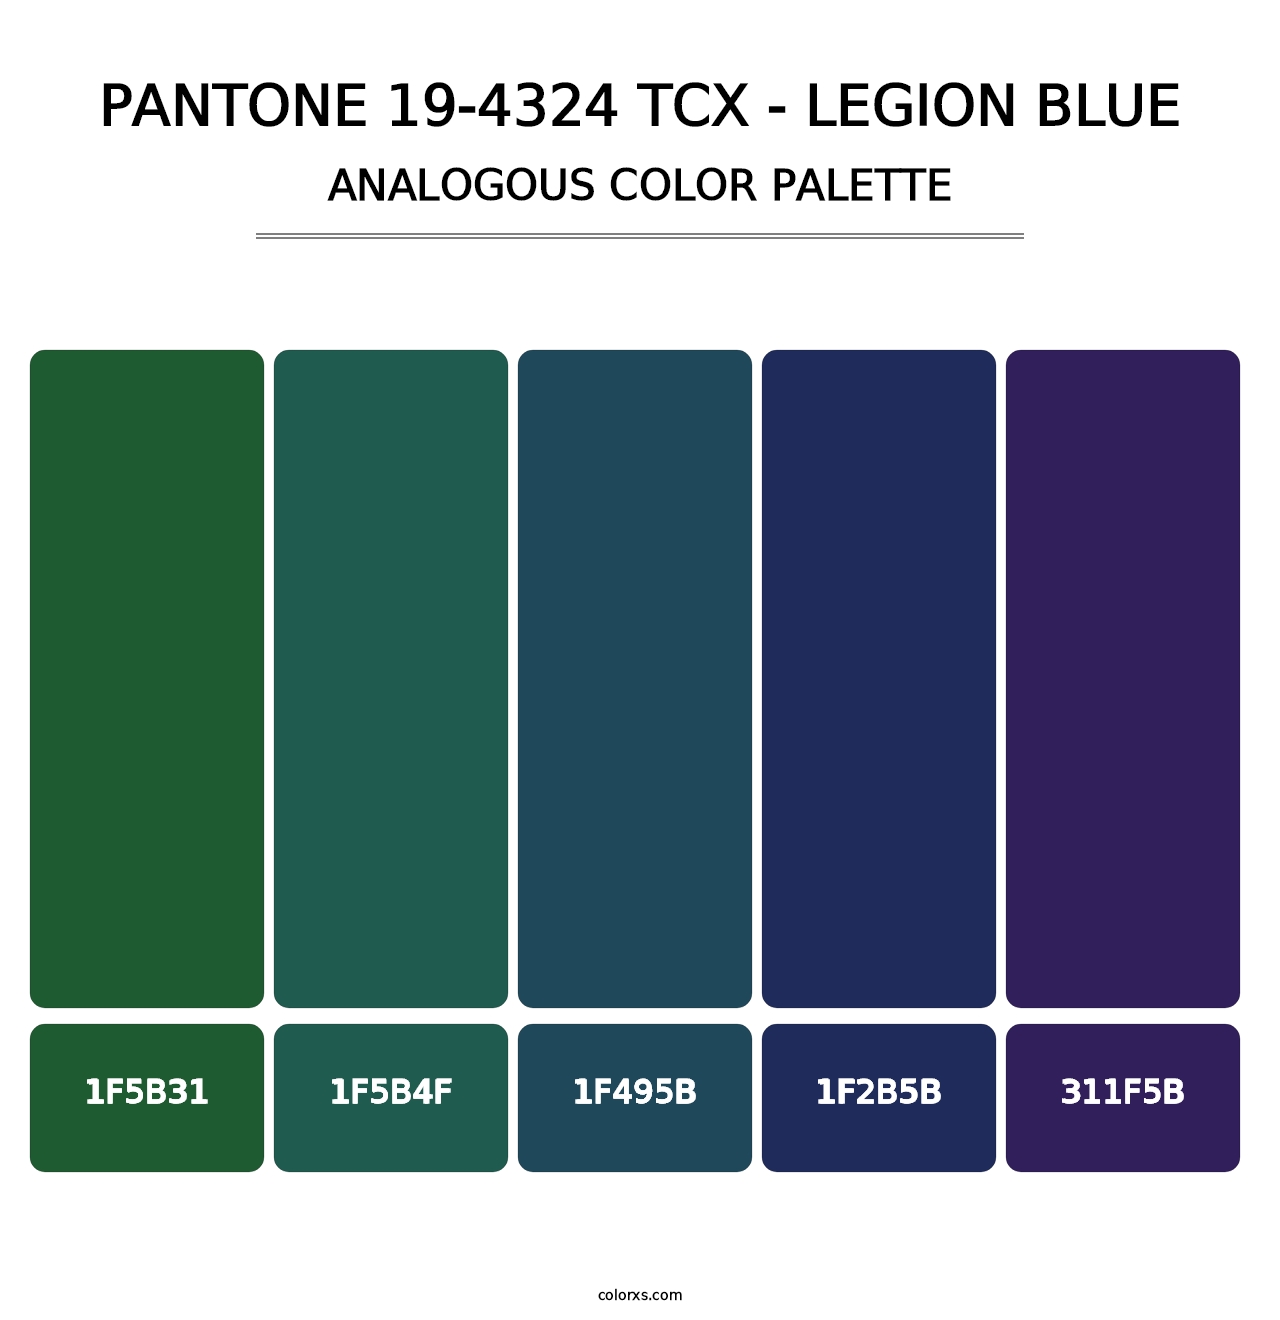 PANTONE 19-4324 TCX - Legion Blue - Analogous Color Palette